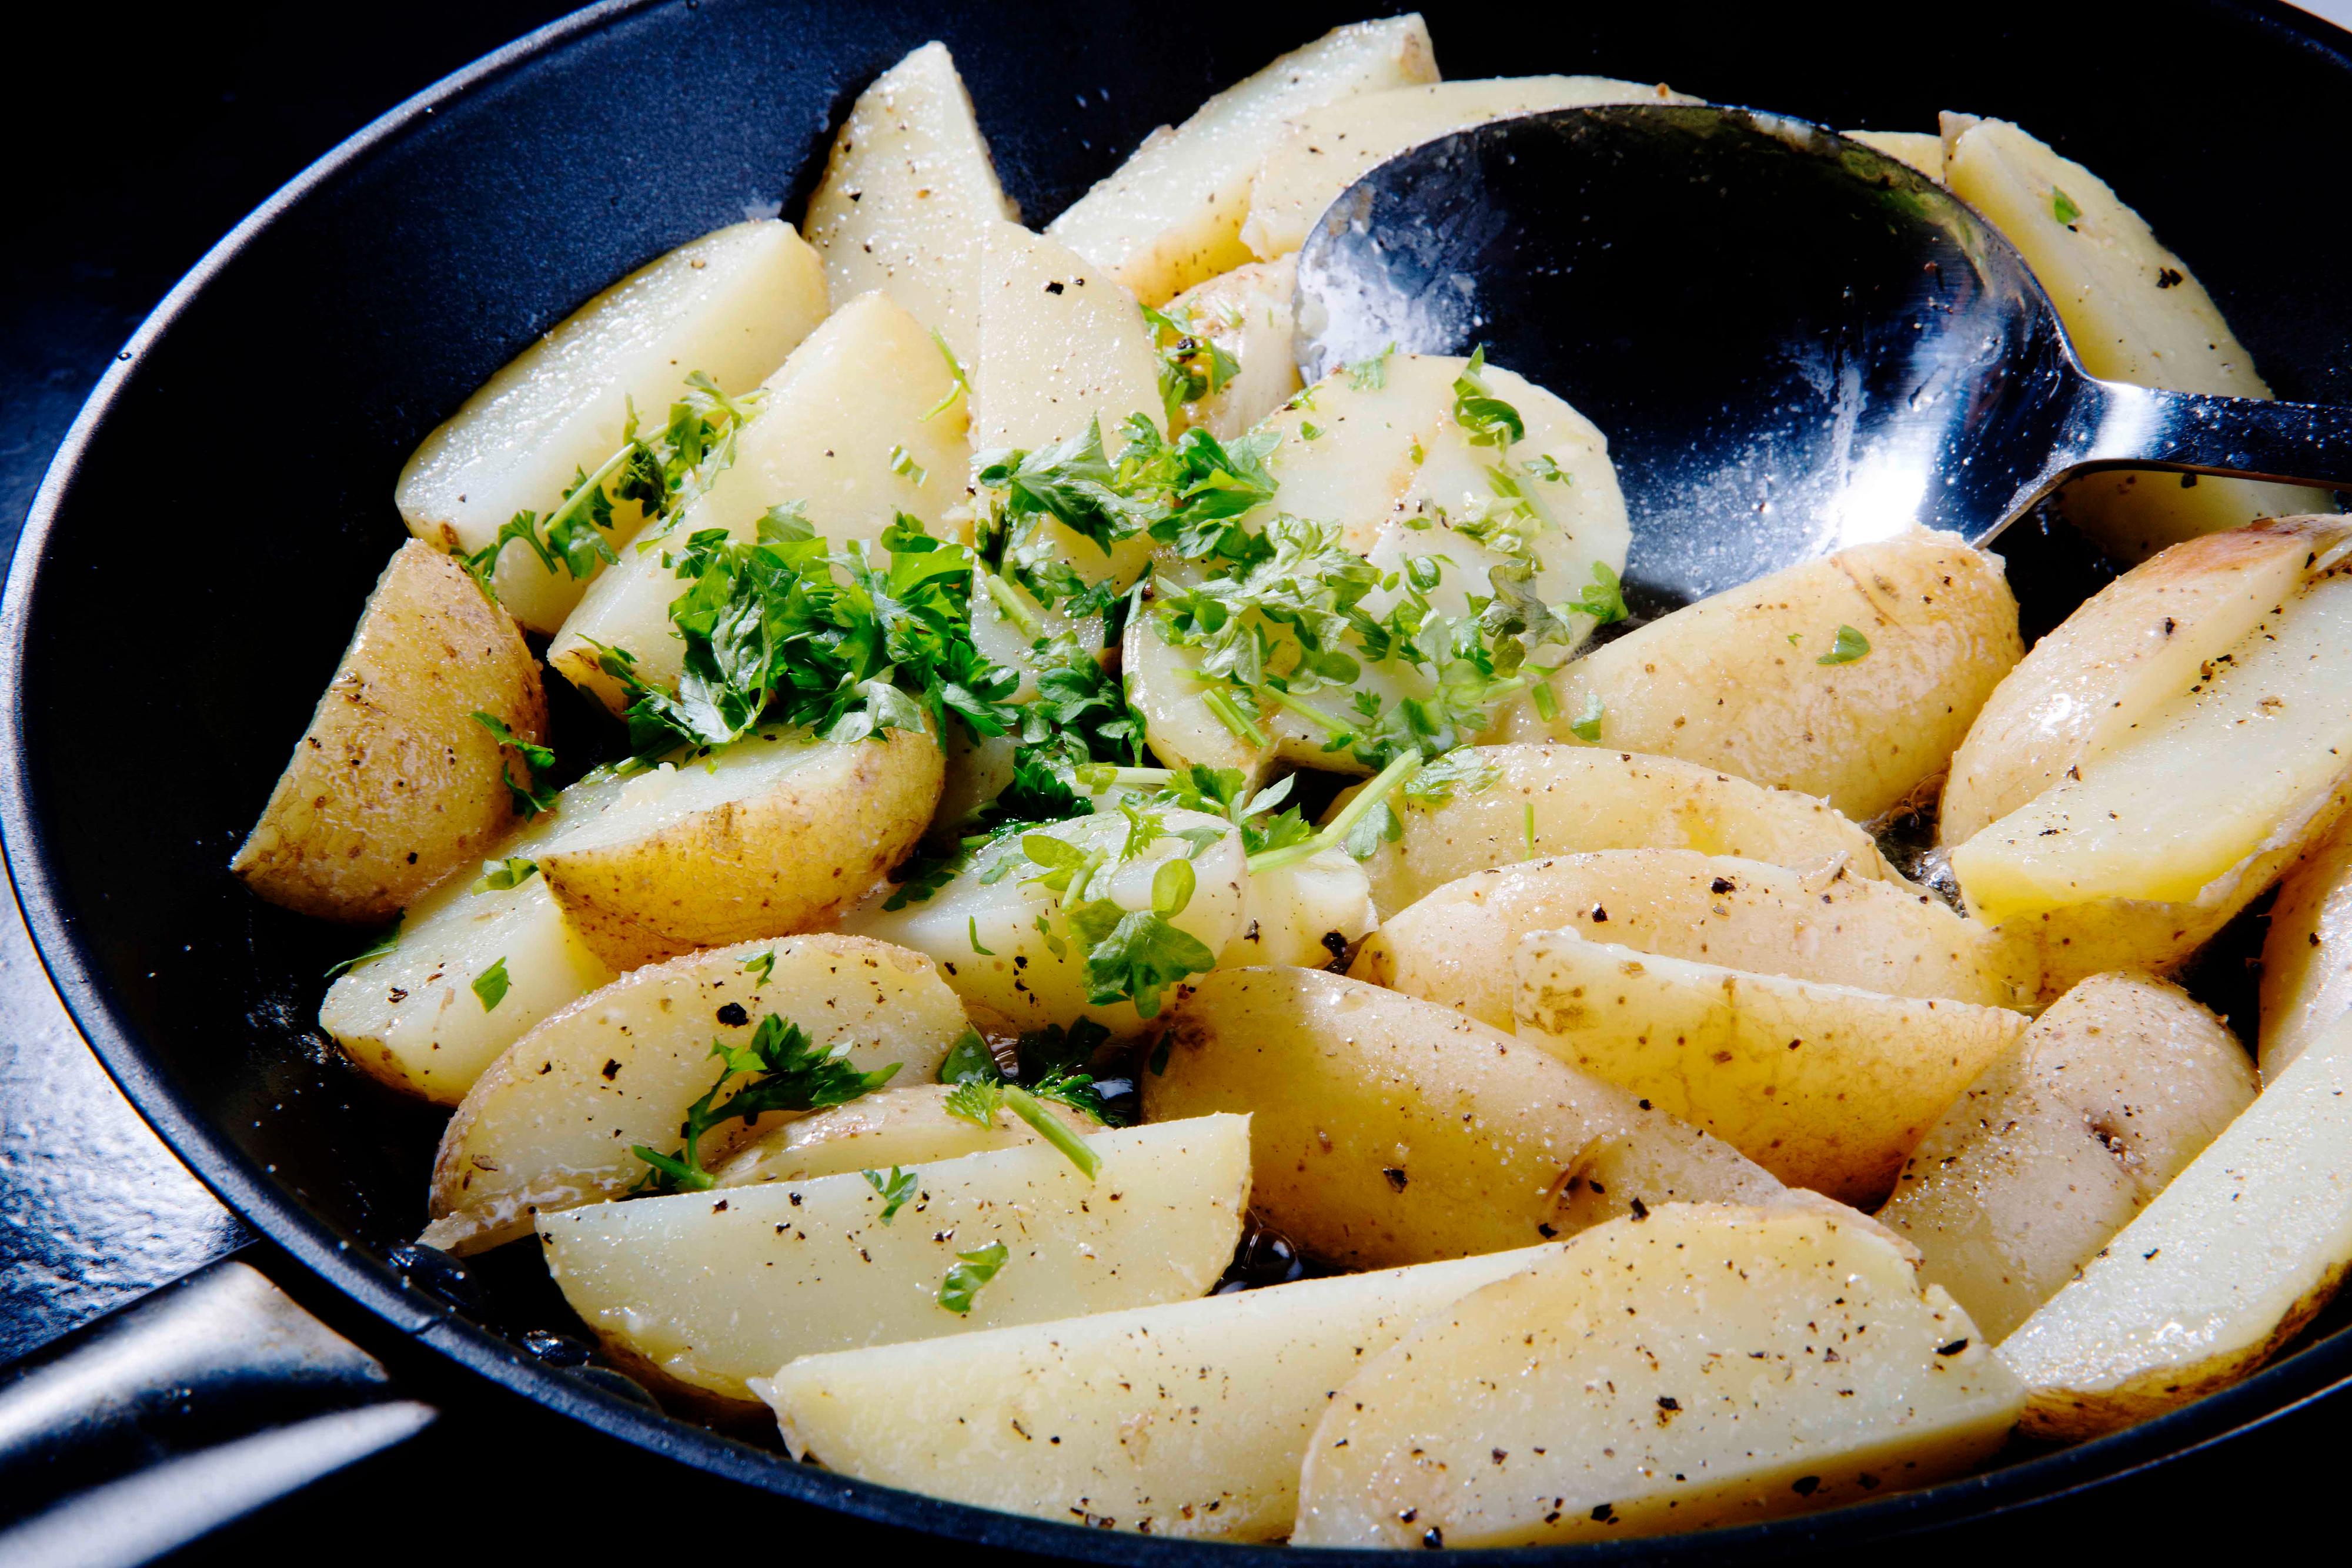 Kok potetene møre i vann. Hell av kokevannet og damp poteten tørre i kjelen før de deles i båter. Stek potetebåtene med smør. Vend inn finhakket persille før servering.